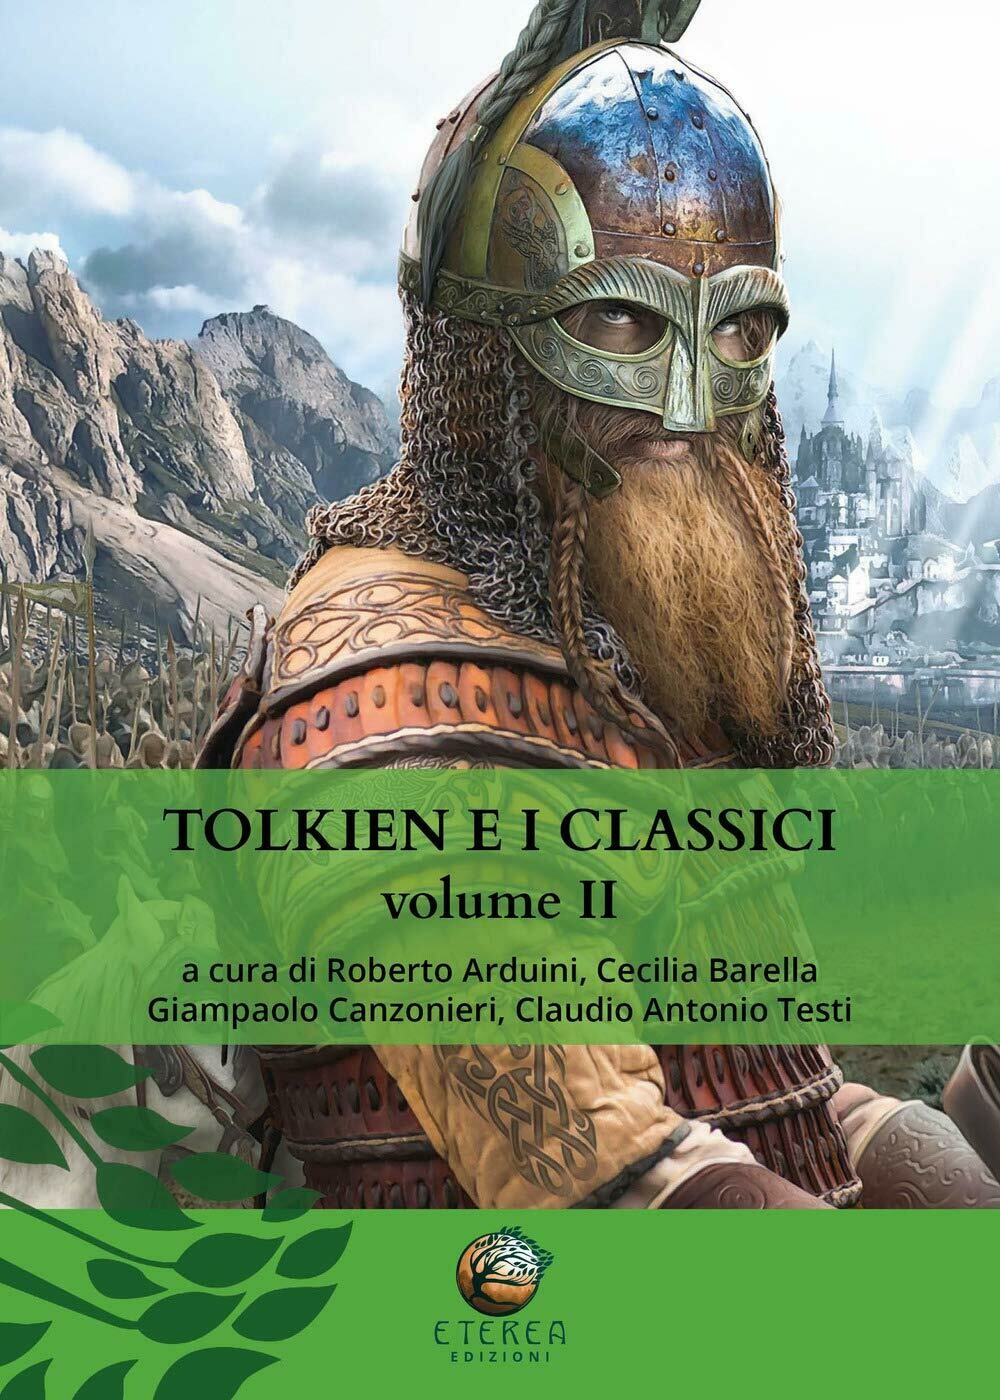 Tolkien e i classici: 2